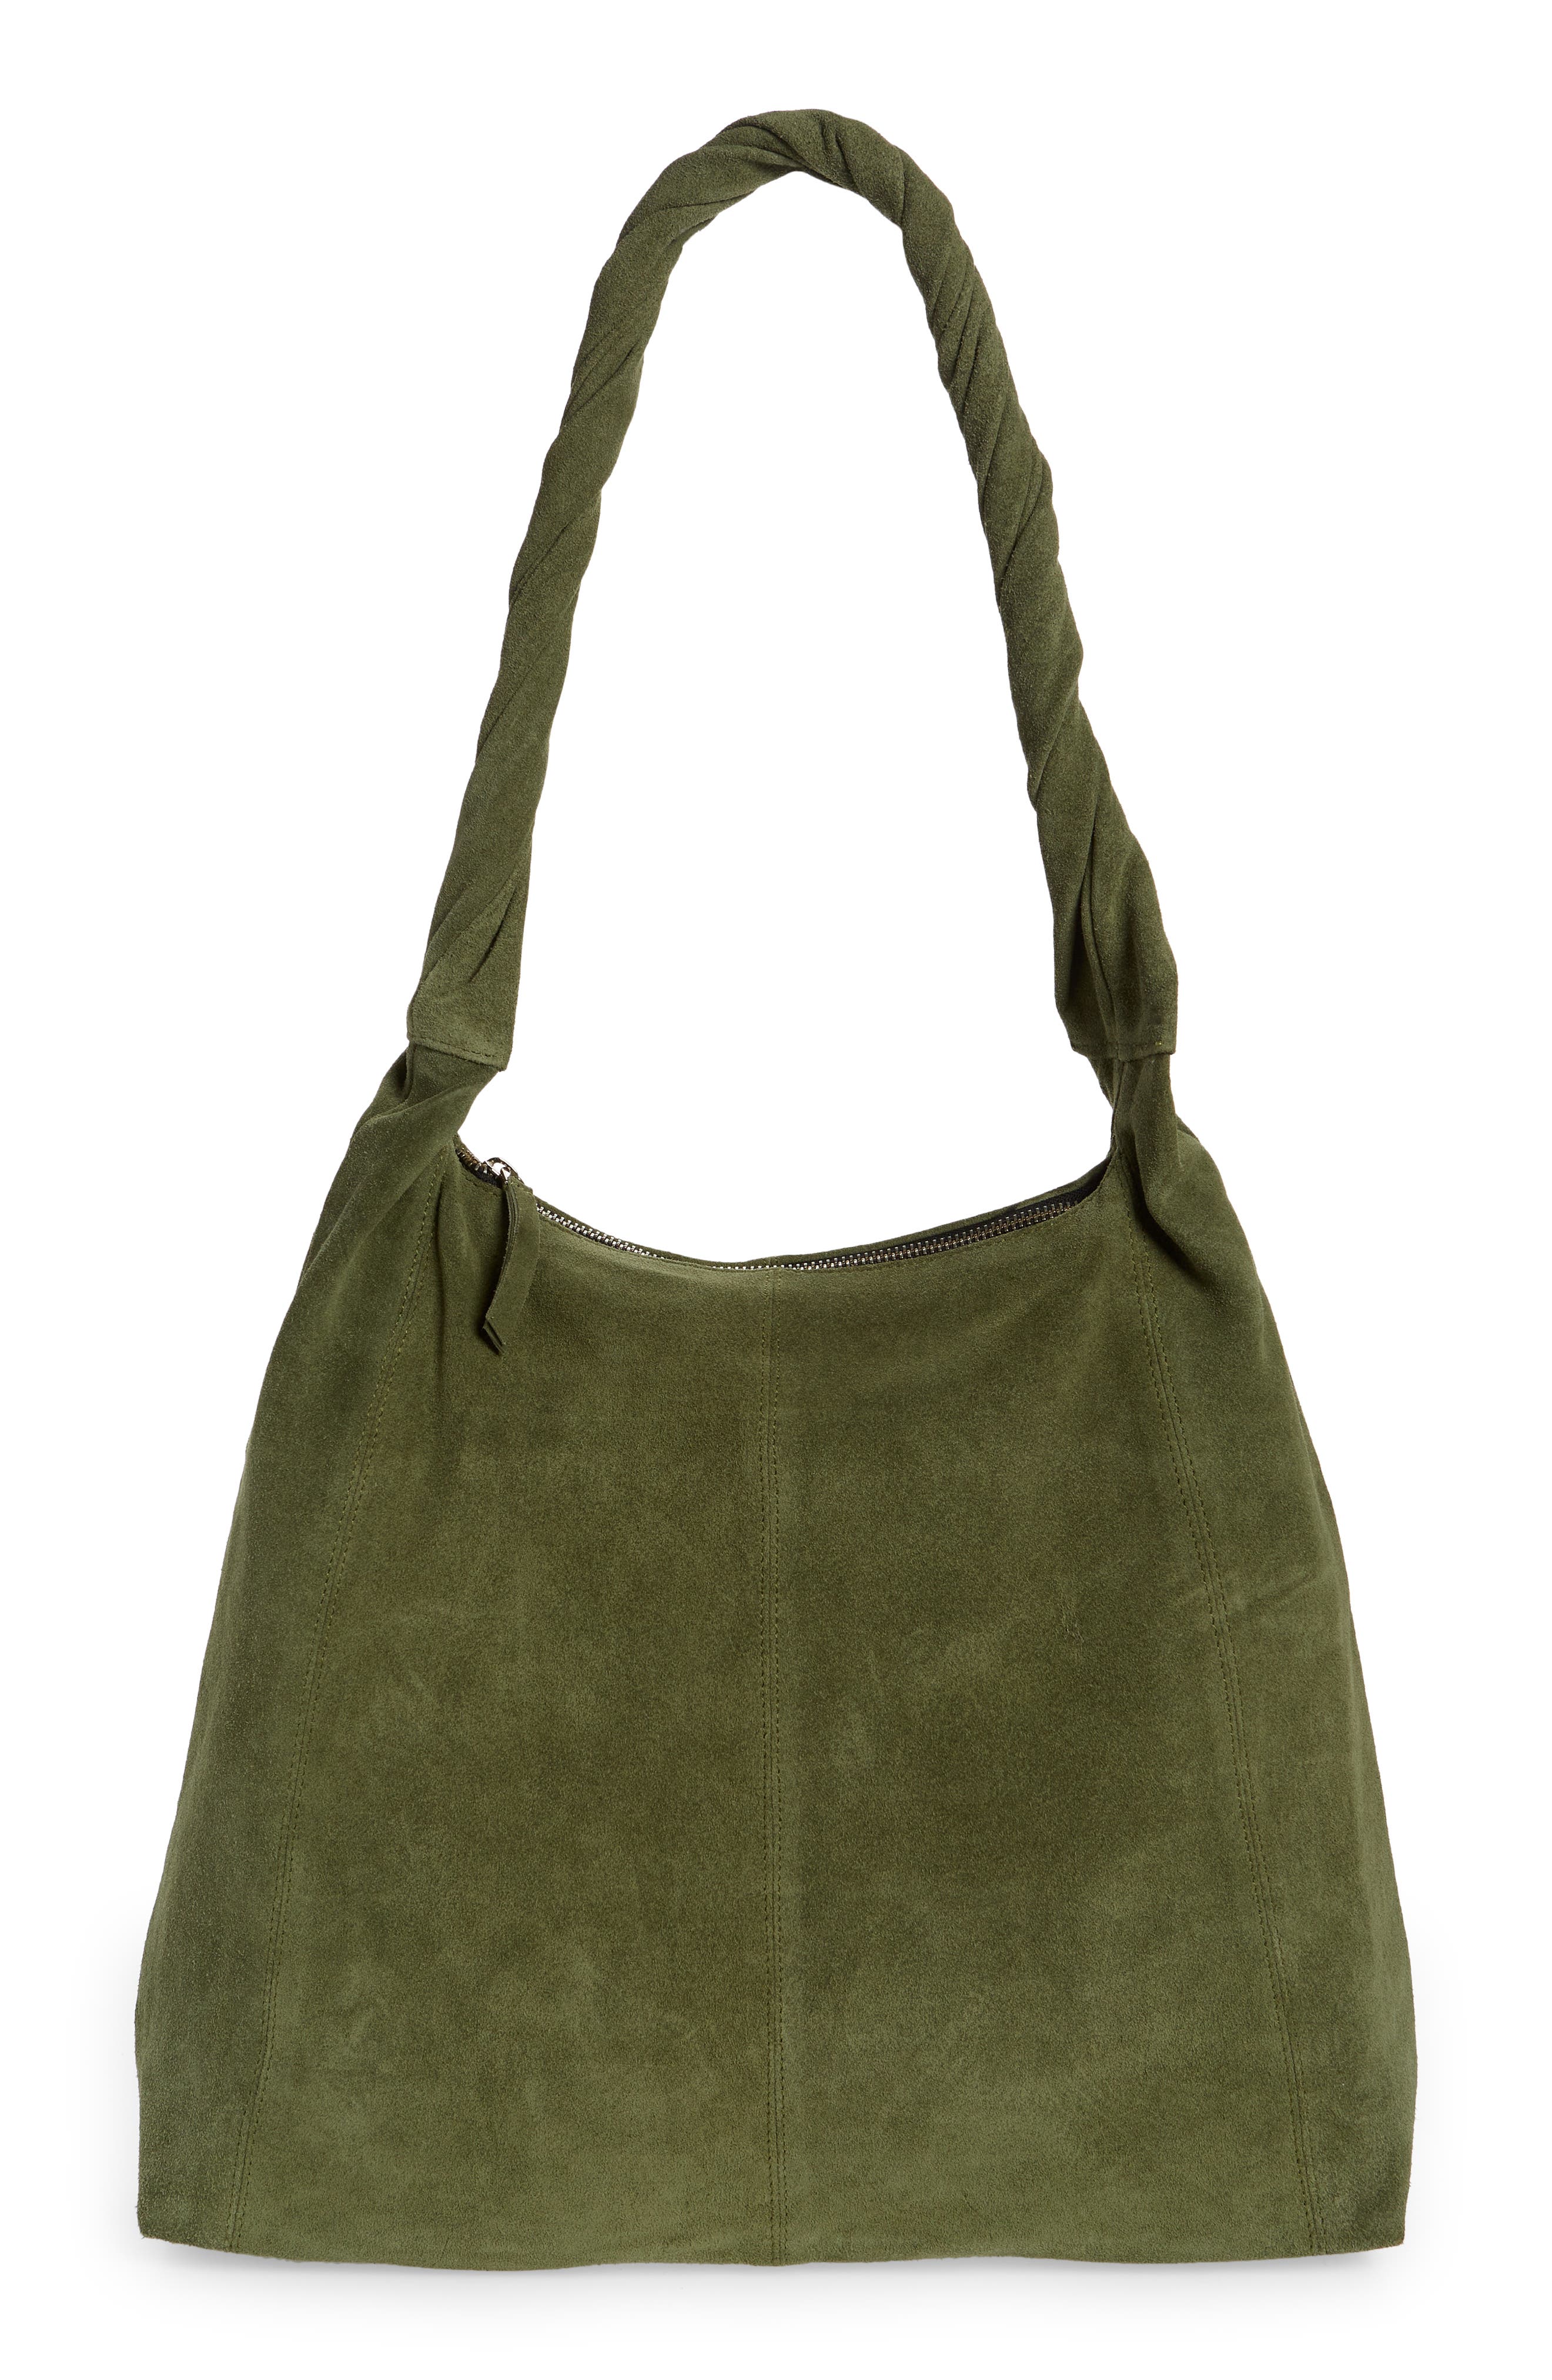 Suede Hobo Bags Handbag Shoulder Bag Slouch Italian Leather Women Bags Ladies 